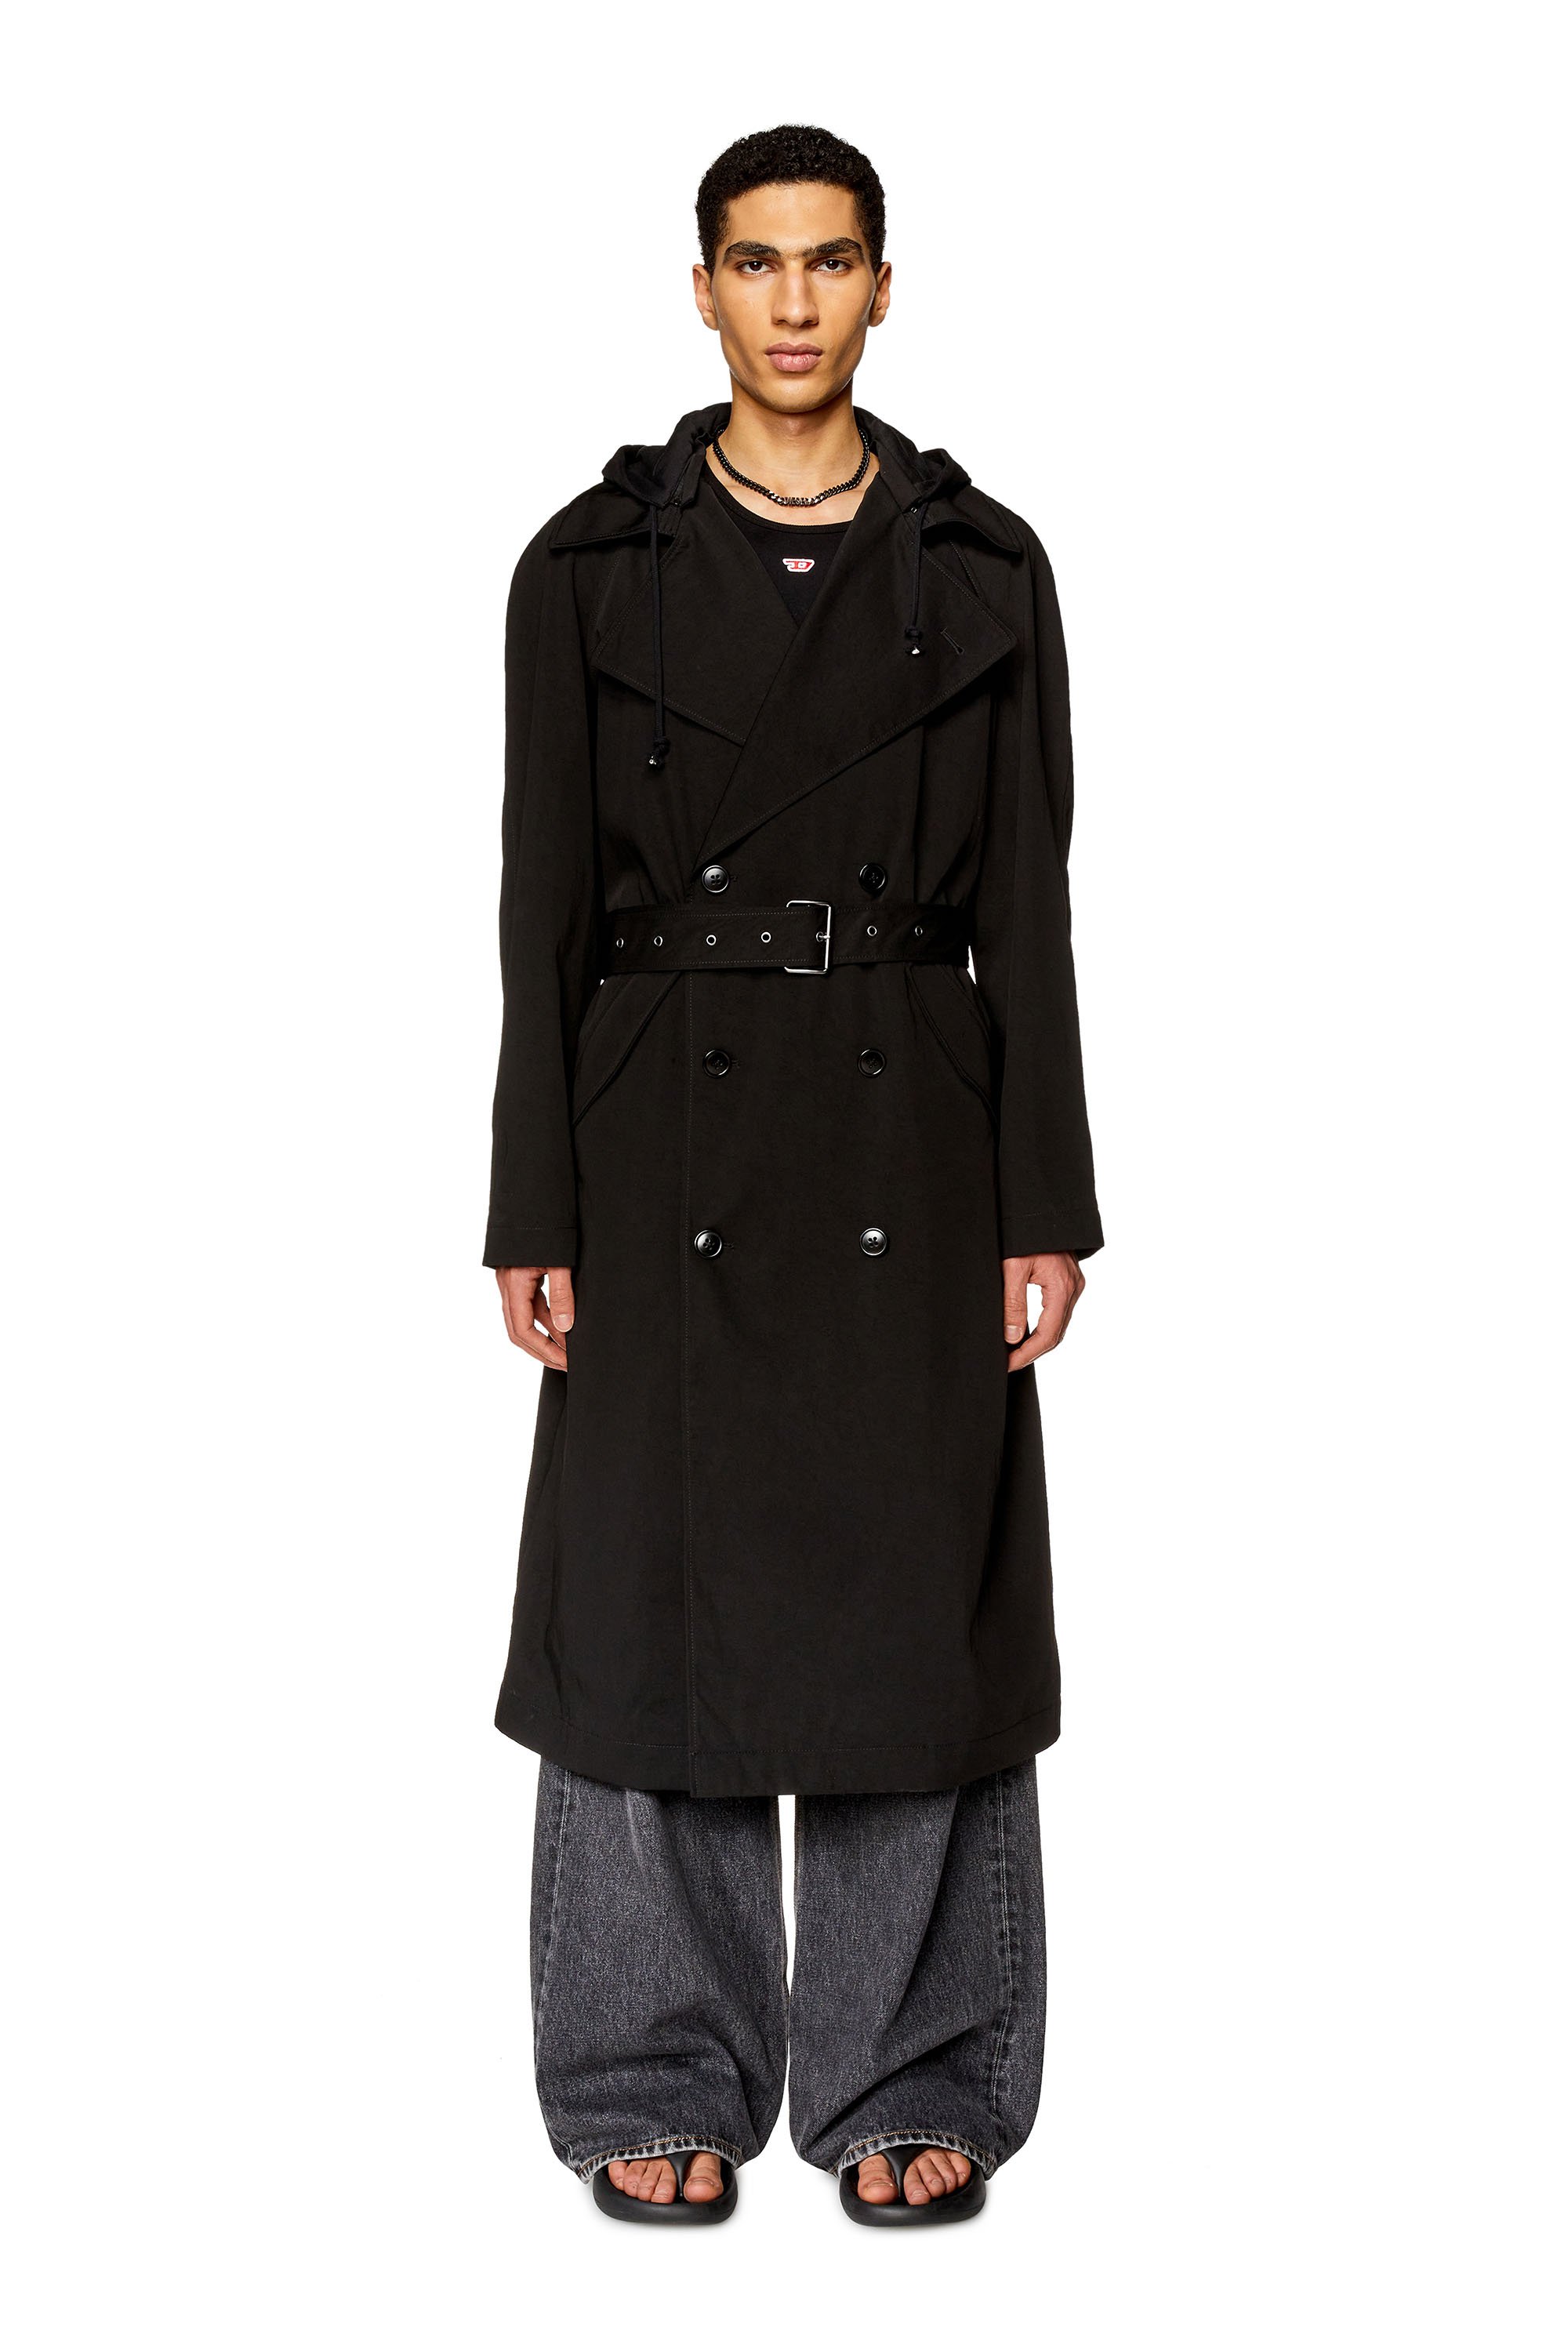 Diesel - J-MATTHEW, Homme Trench-coat en sergé de nylon avec capuche in Noir - Image 2